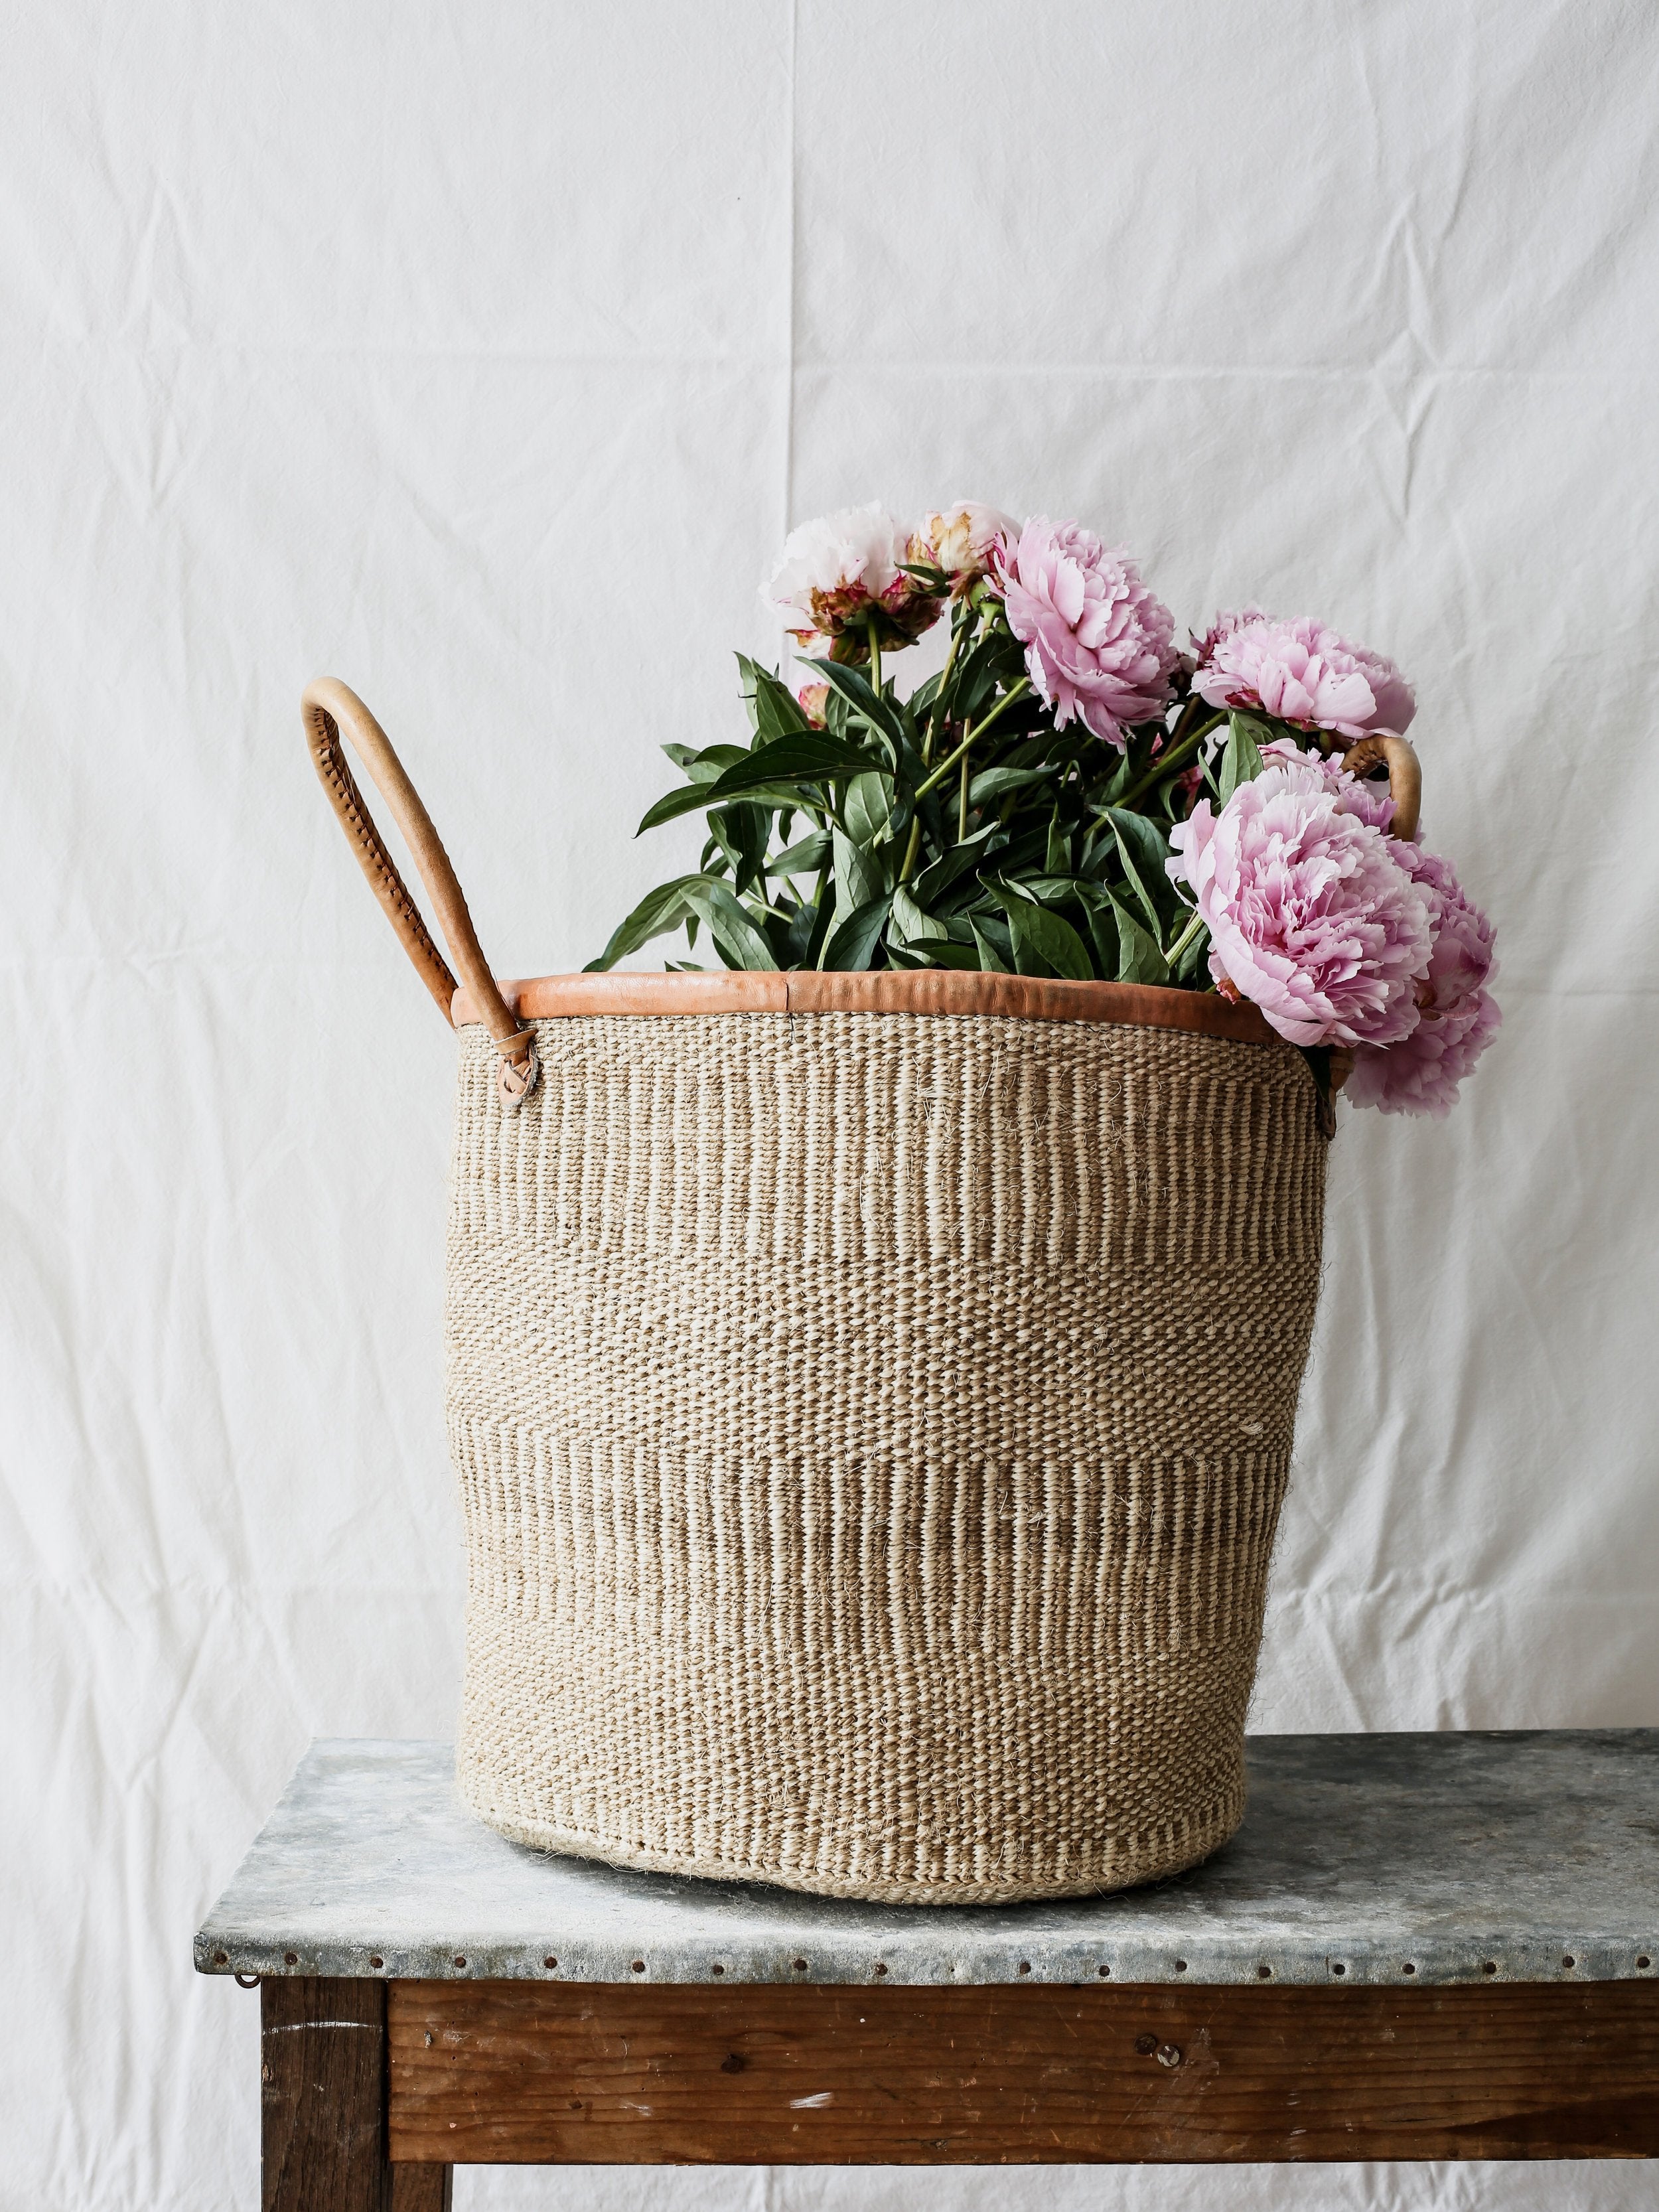 The Cook's Atelier Handwoven Market Basket